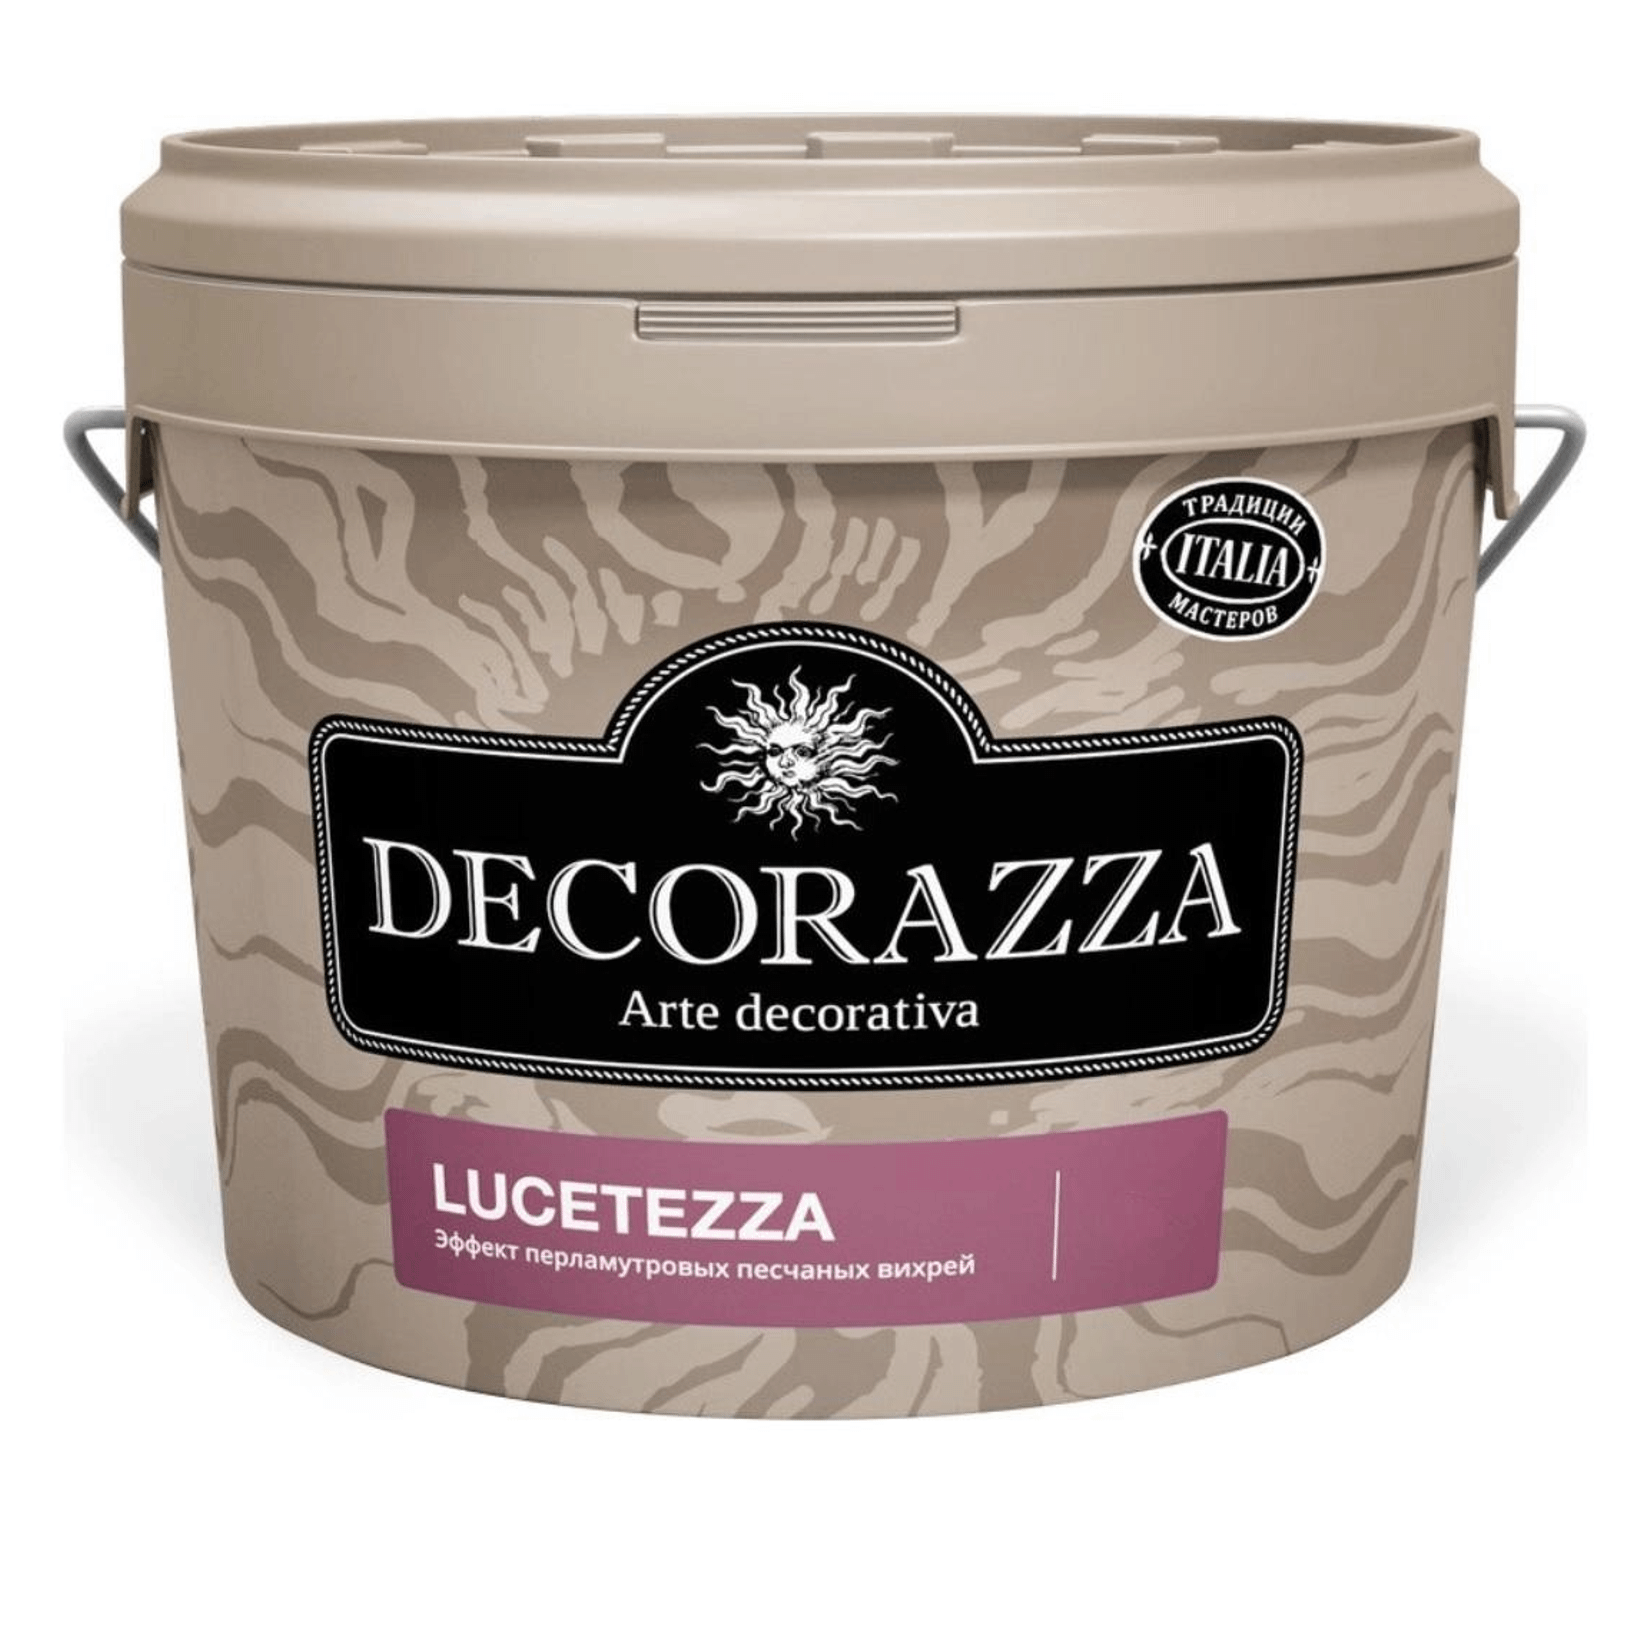 Декоративная краска Decorazza lucetezza база aluminium 5 кг